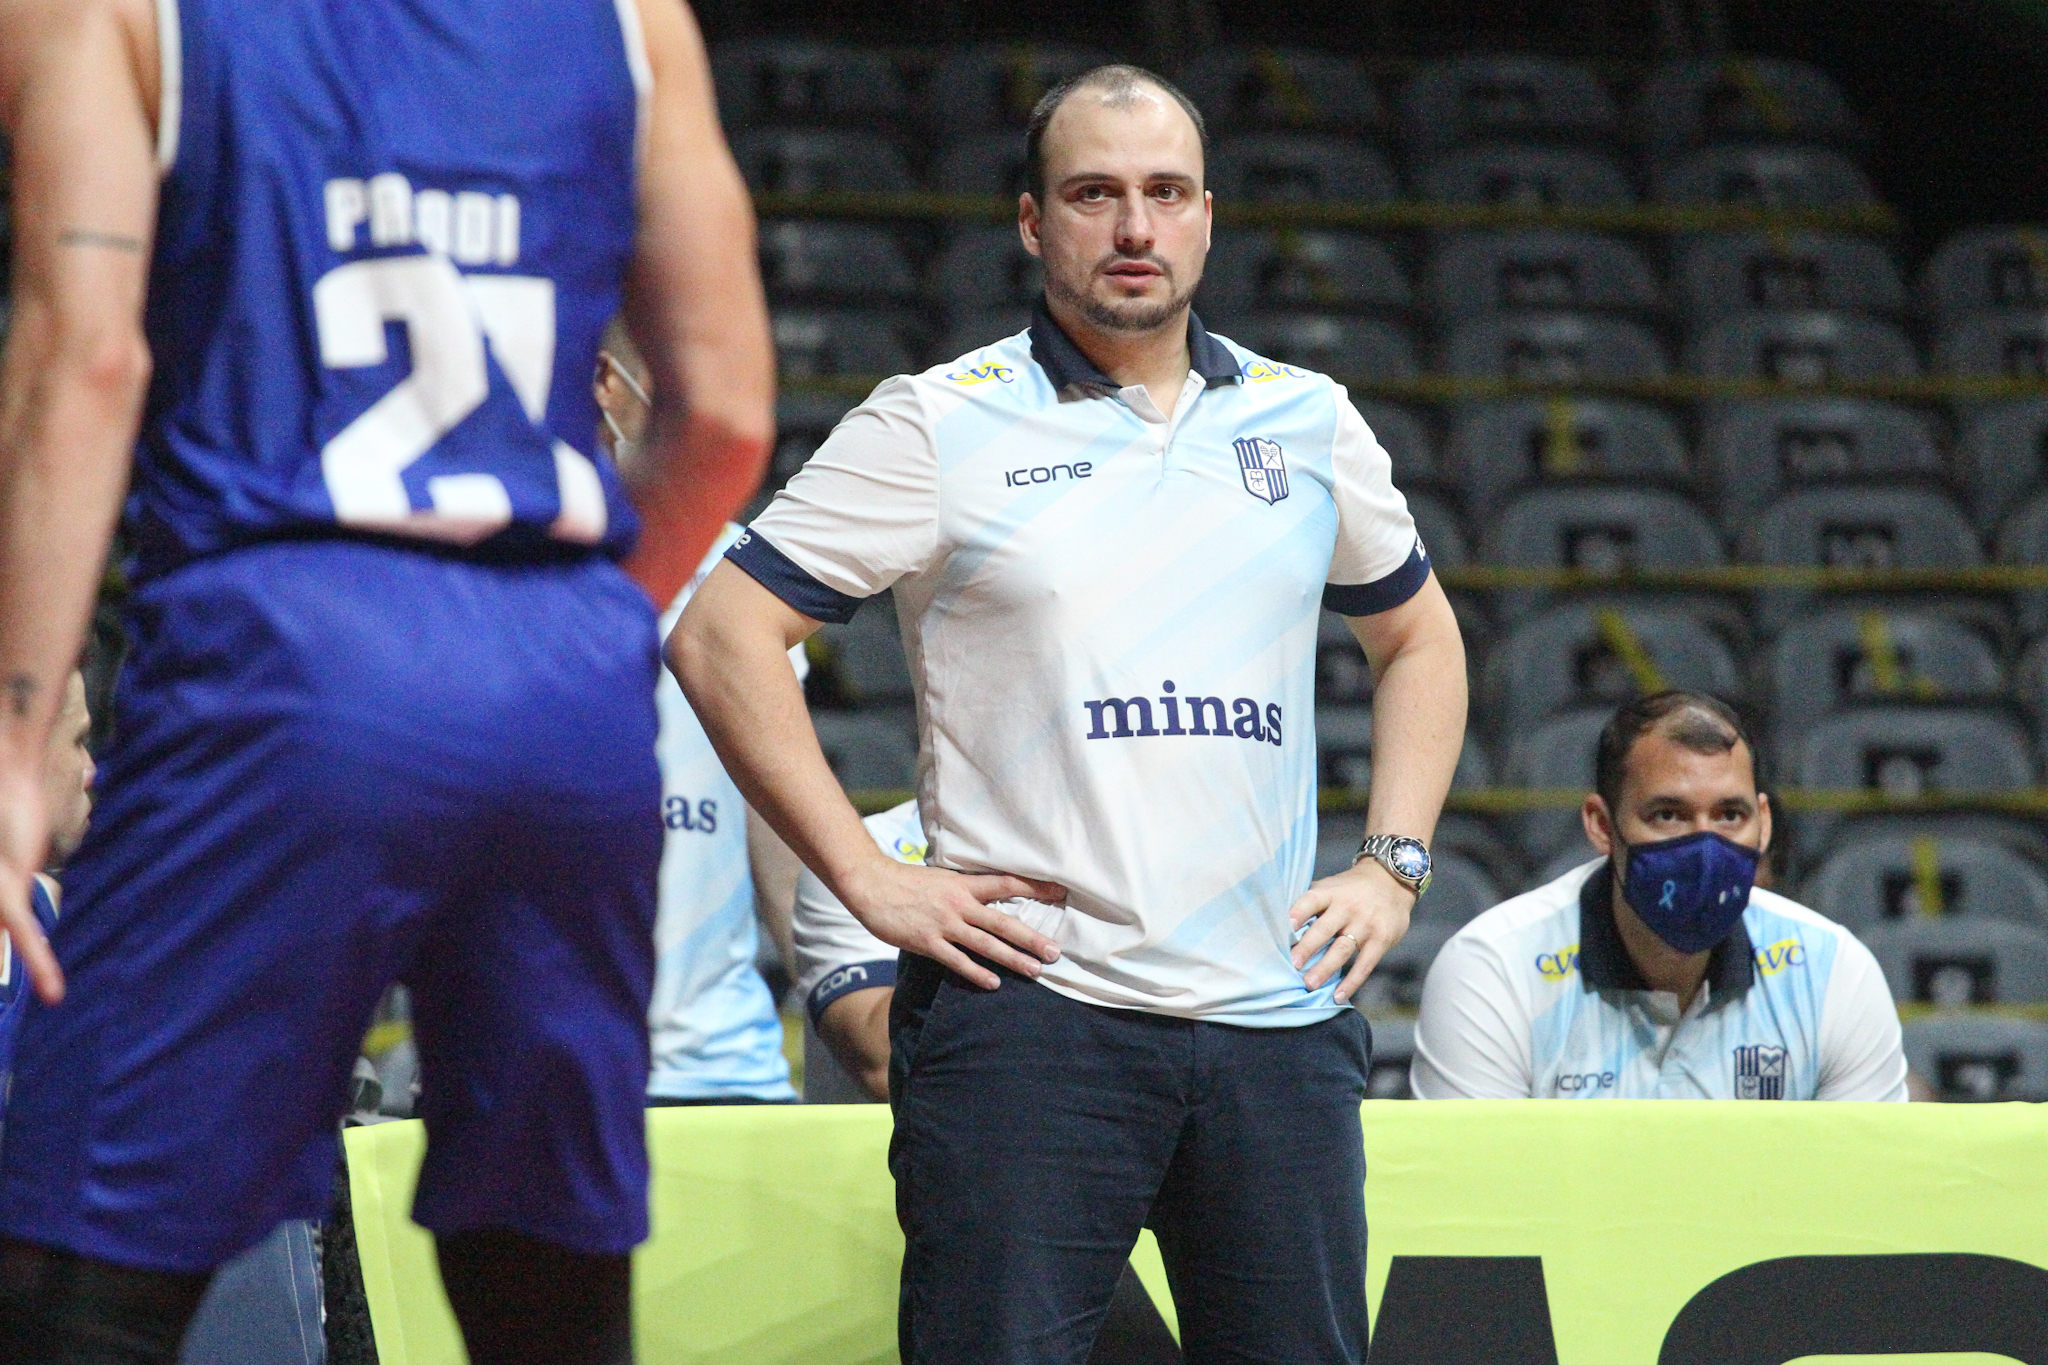 Técnico Léo Costa espera que a equipe consiga reagir como reagiu em jogos passados (Foto: Mari Sá/LNB)